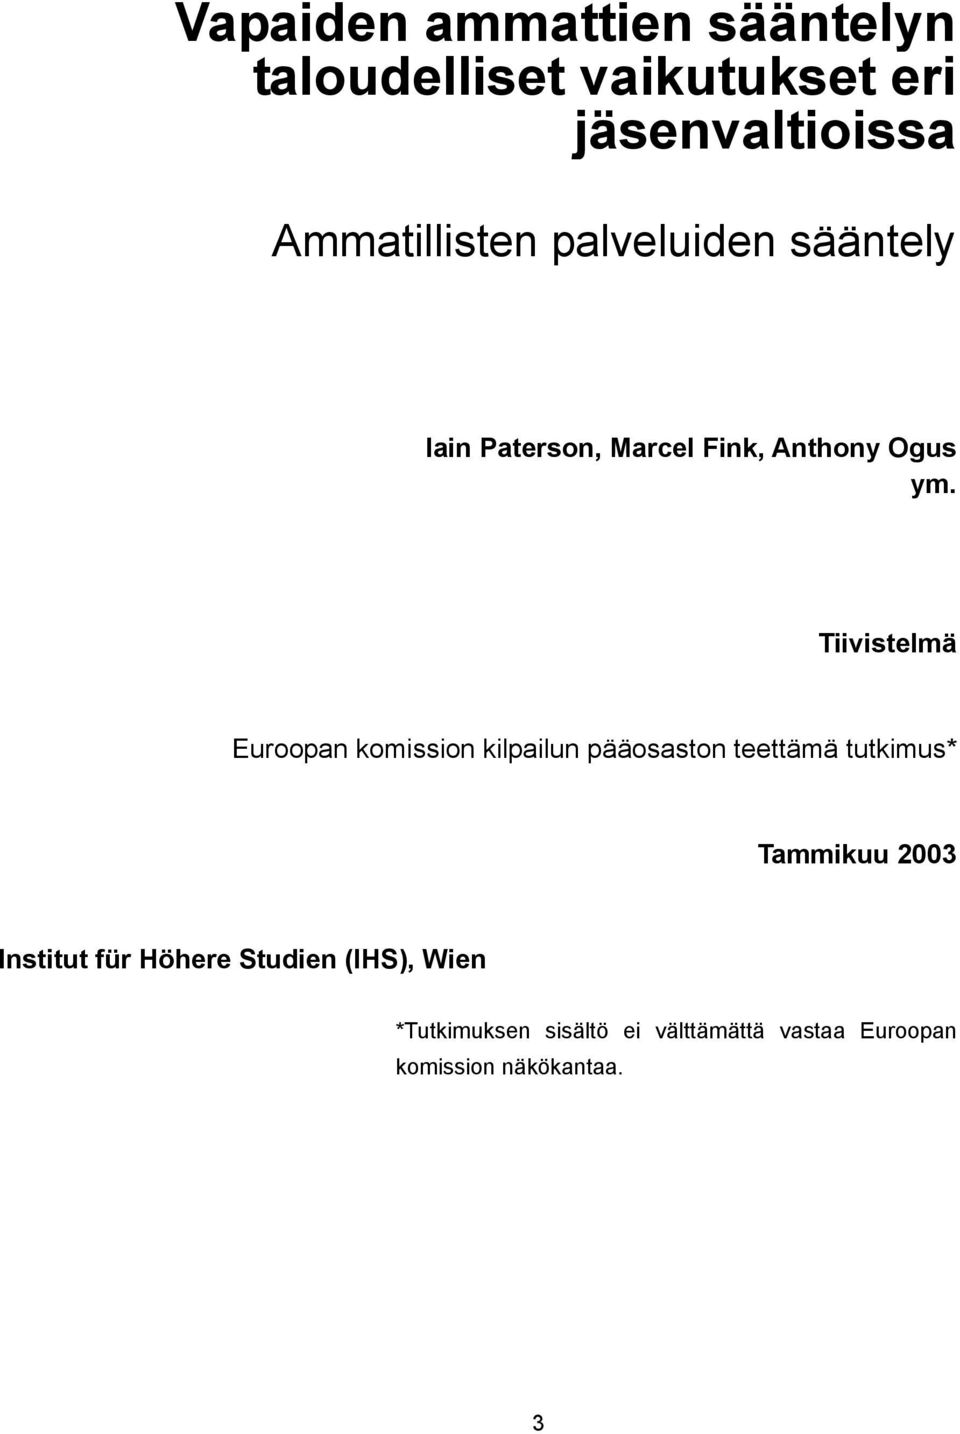 Tiivistelmä Euroopan komission kilpailun pääosaston teettämä tutkimus* Tammikuu 2003